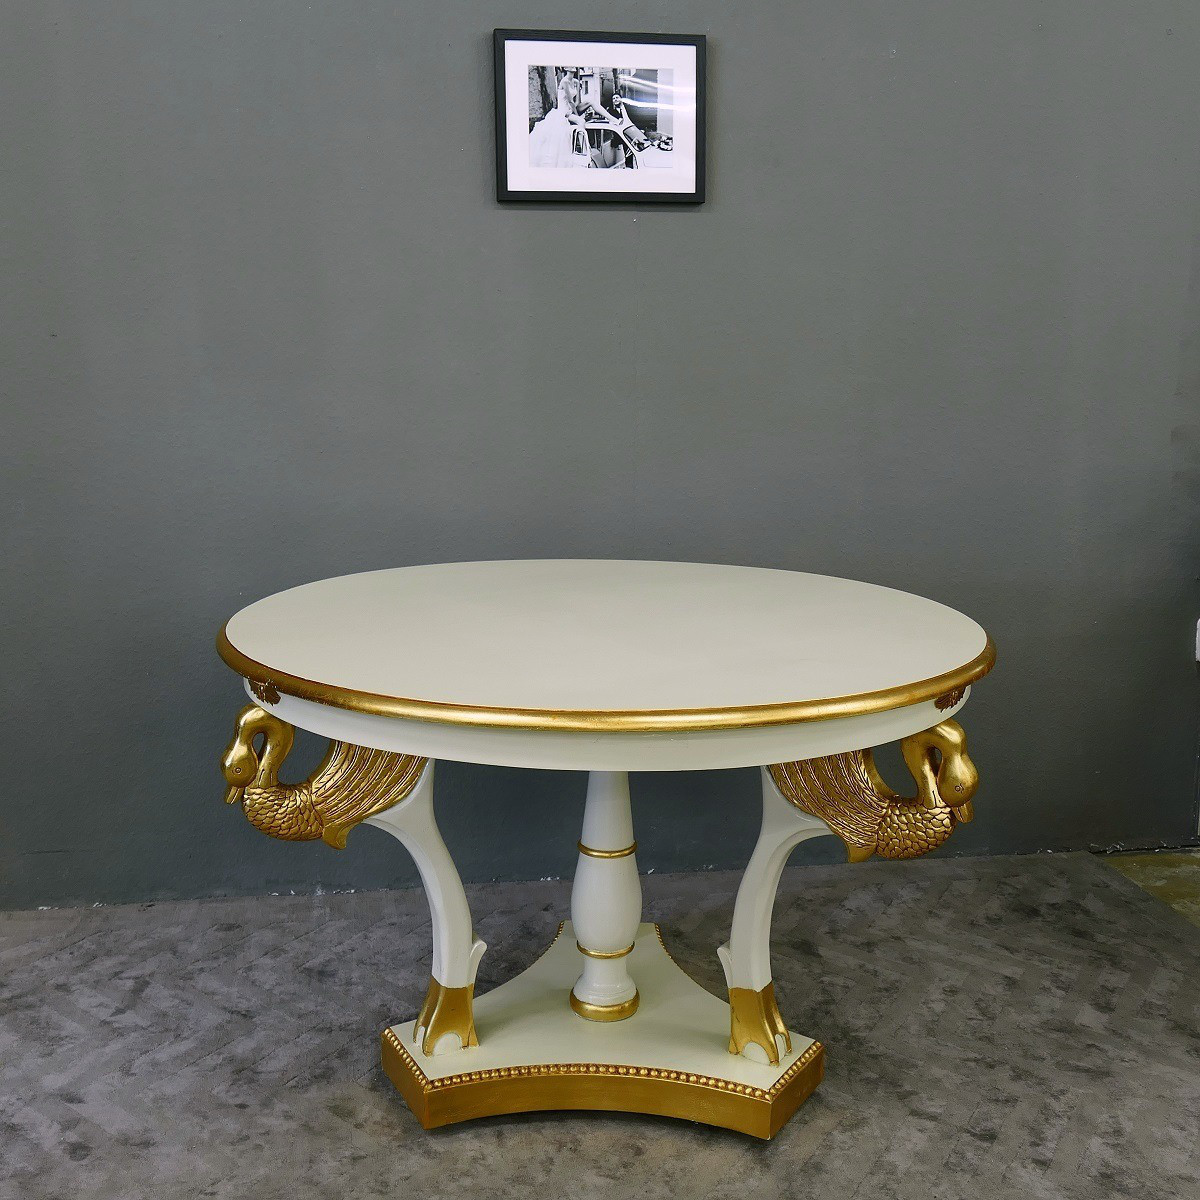 Chippendale Tisch Esstisch Mahagoni excellent white / gold Ausstellungsstück